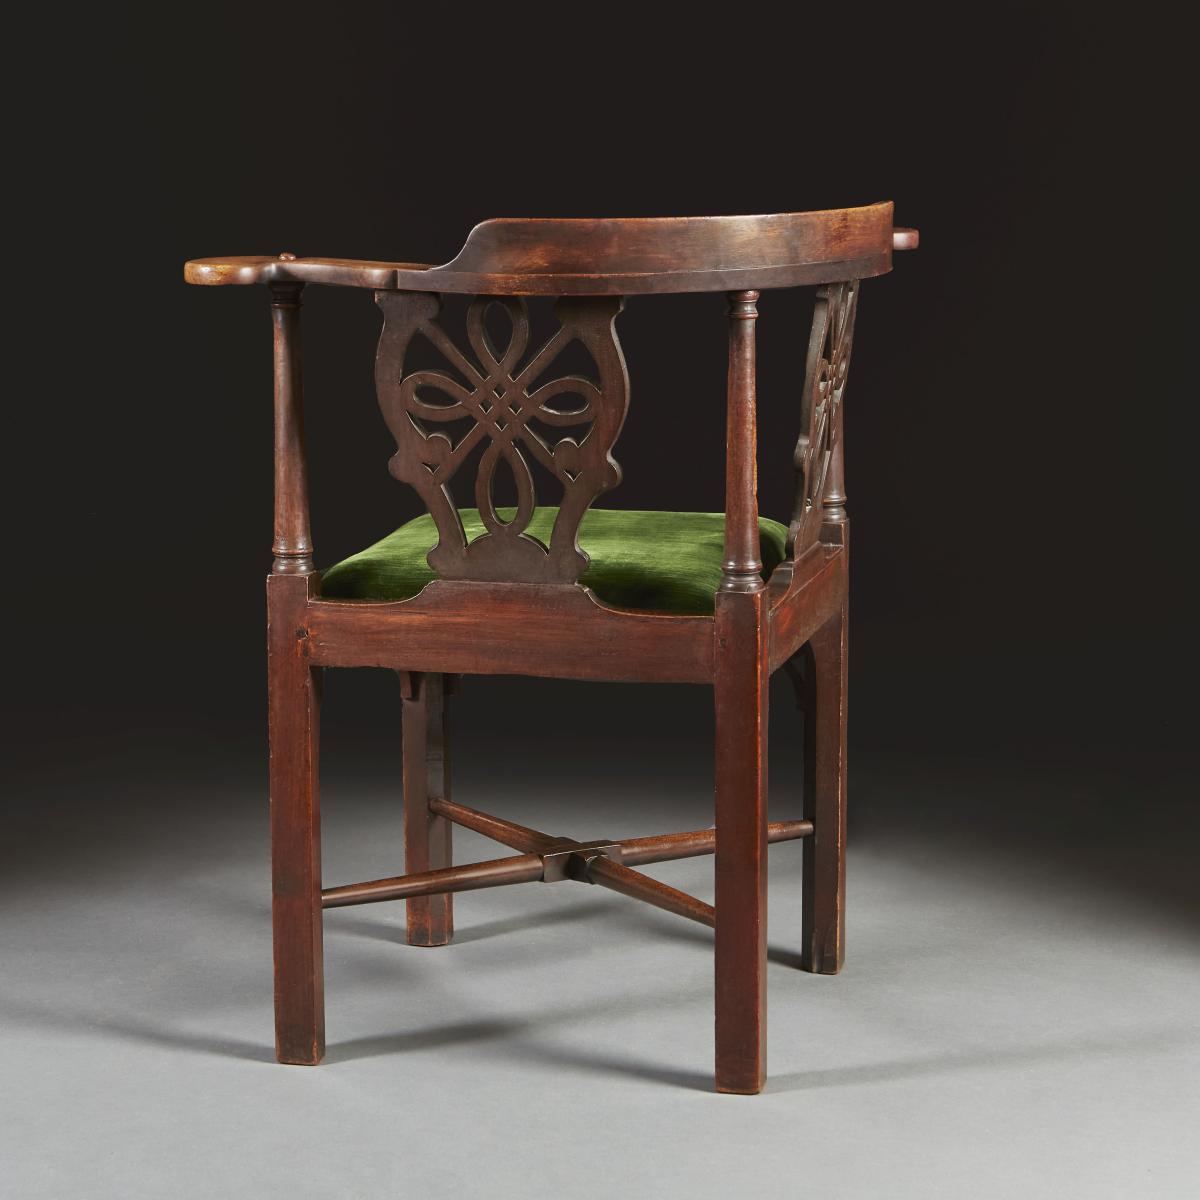 Mid 18th Century Irish Corner Chair